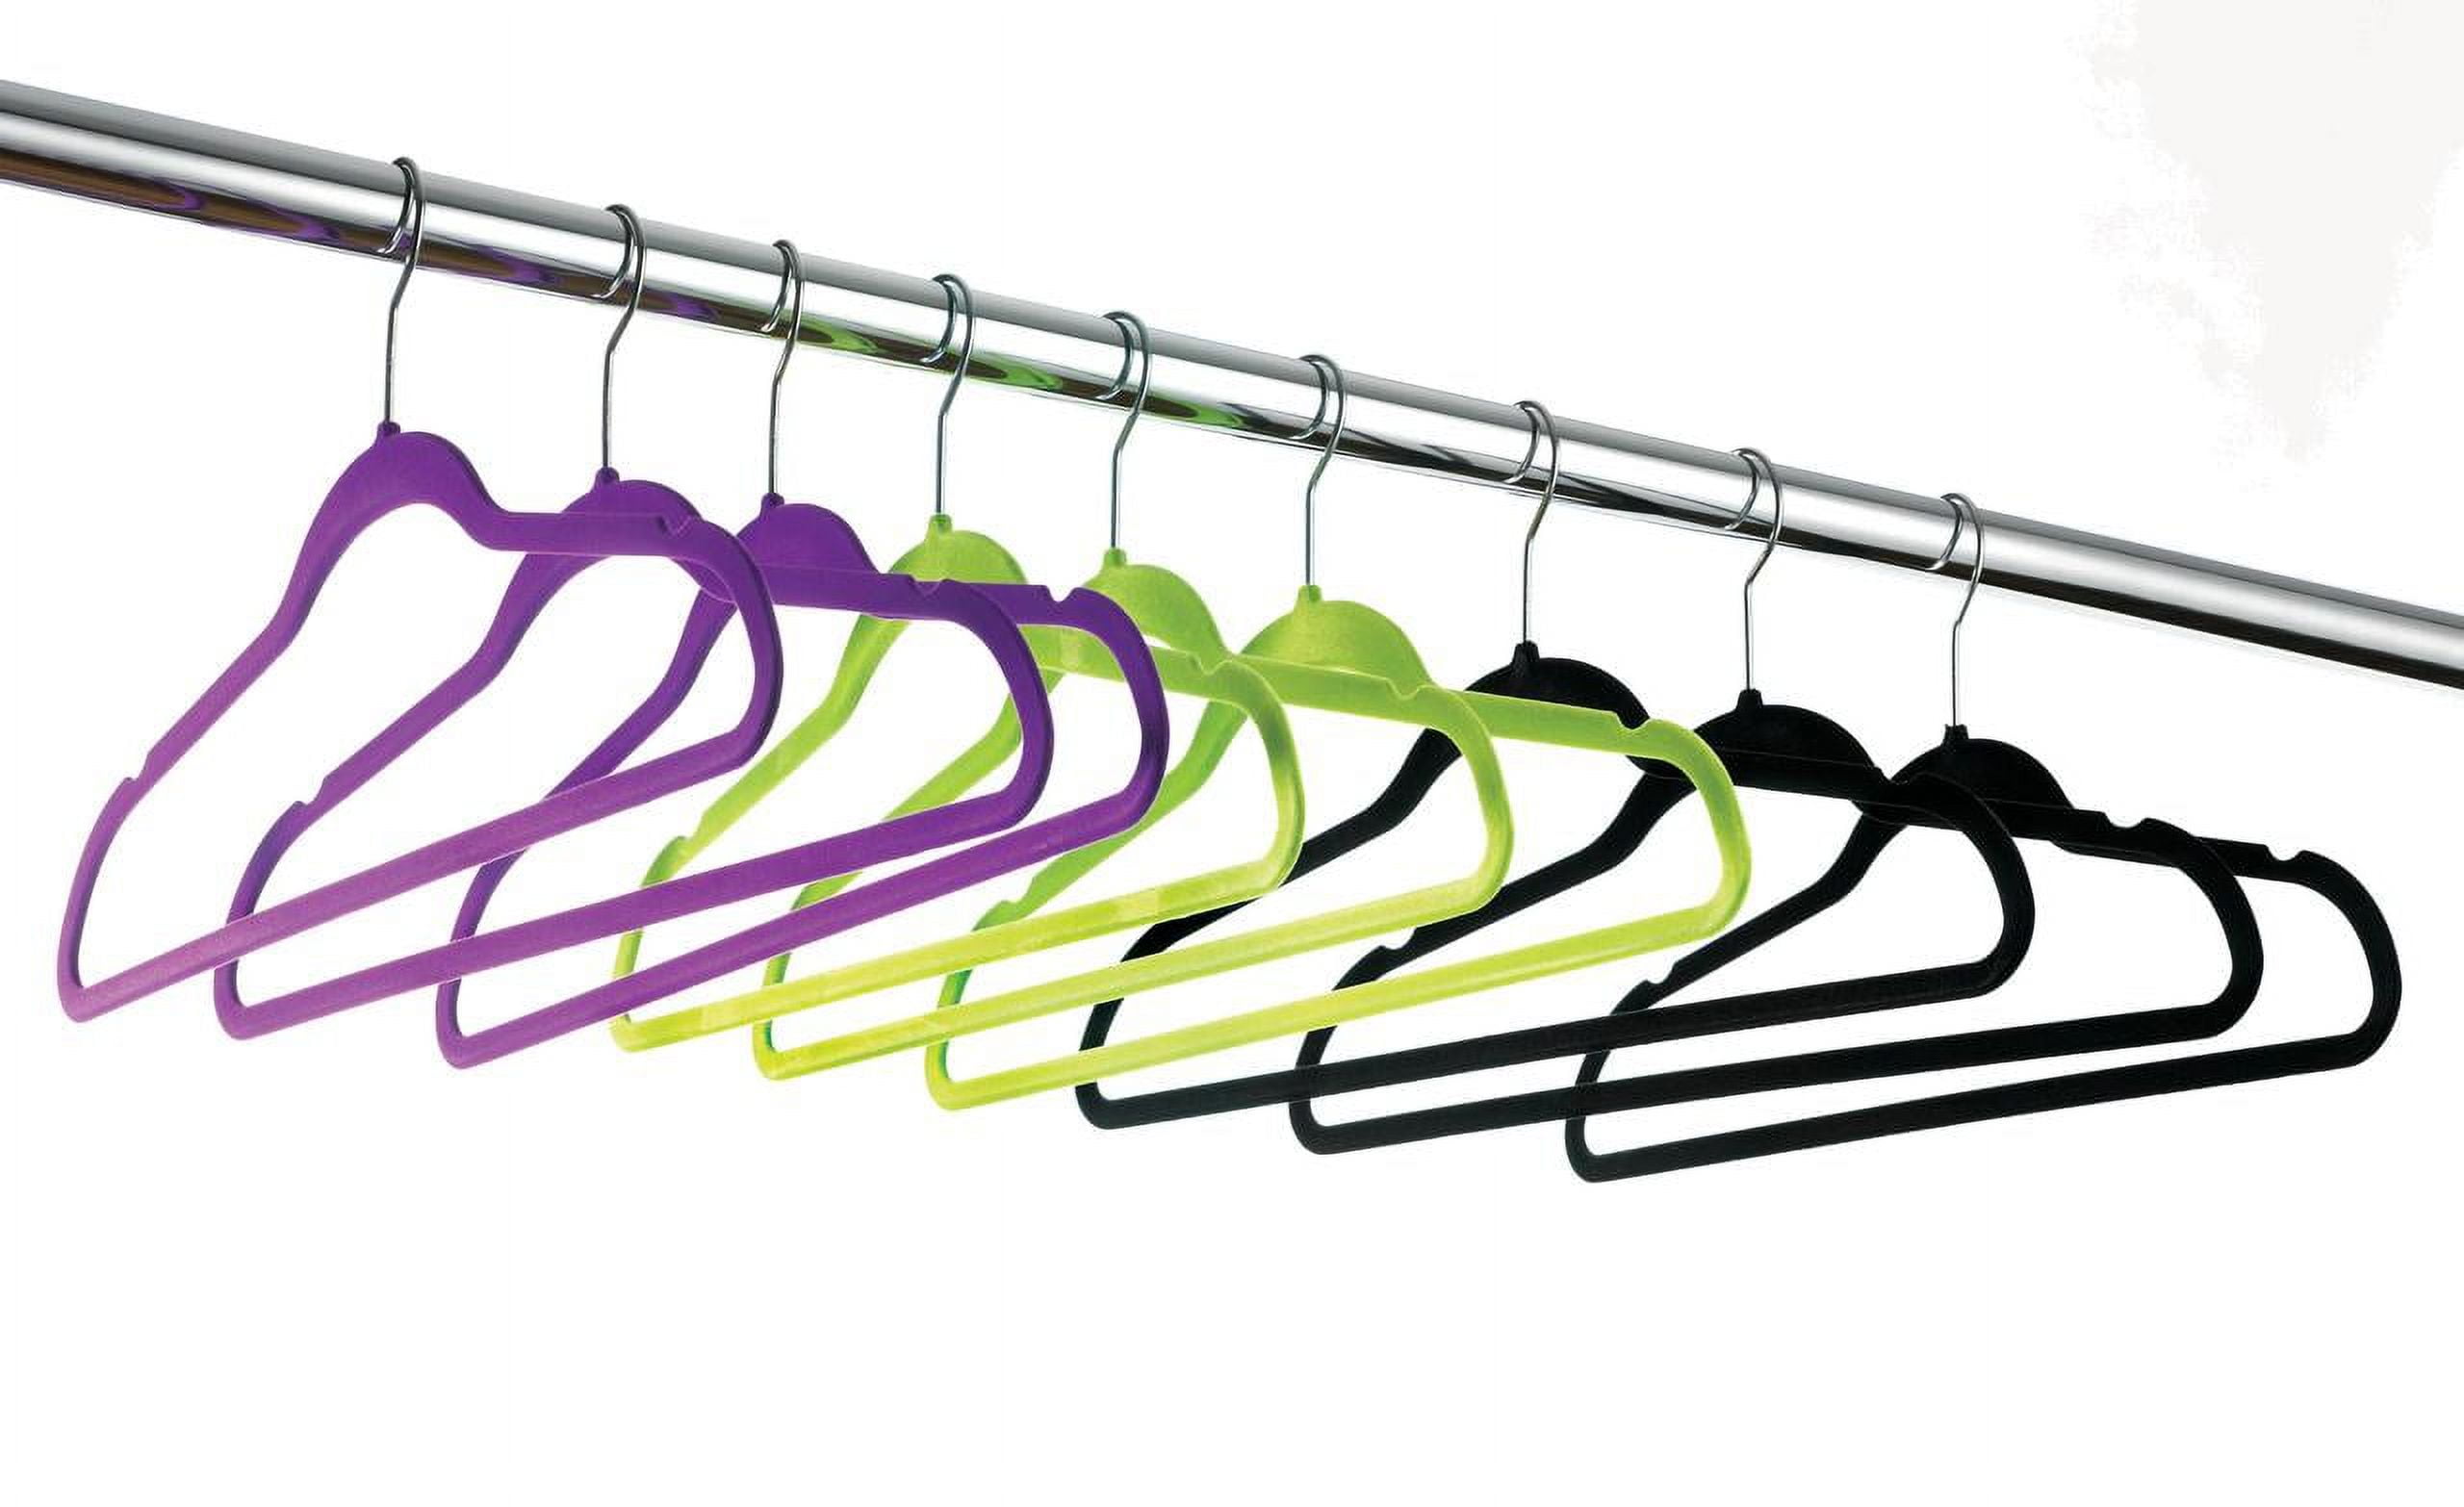 OSTO Black Velvet Hangers 100-Pack OV-113-100-BLK-H - The Home Depot